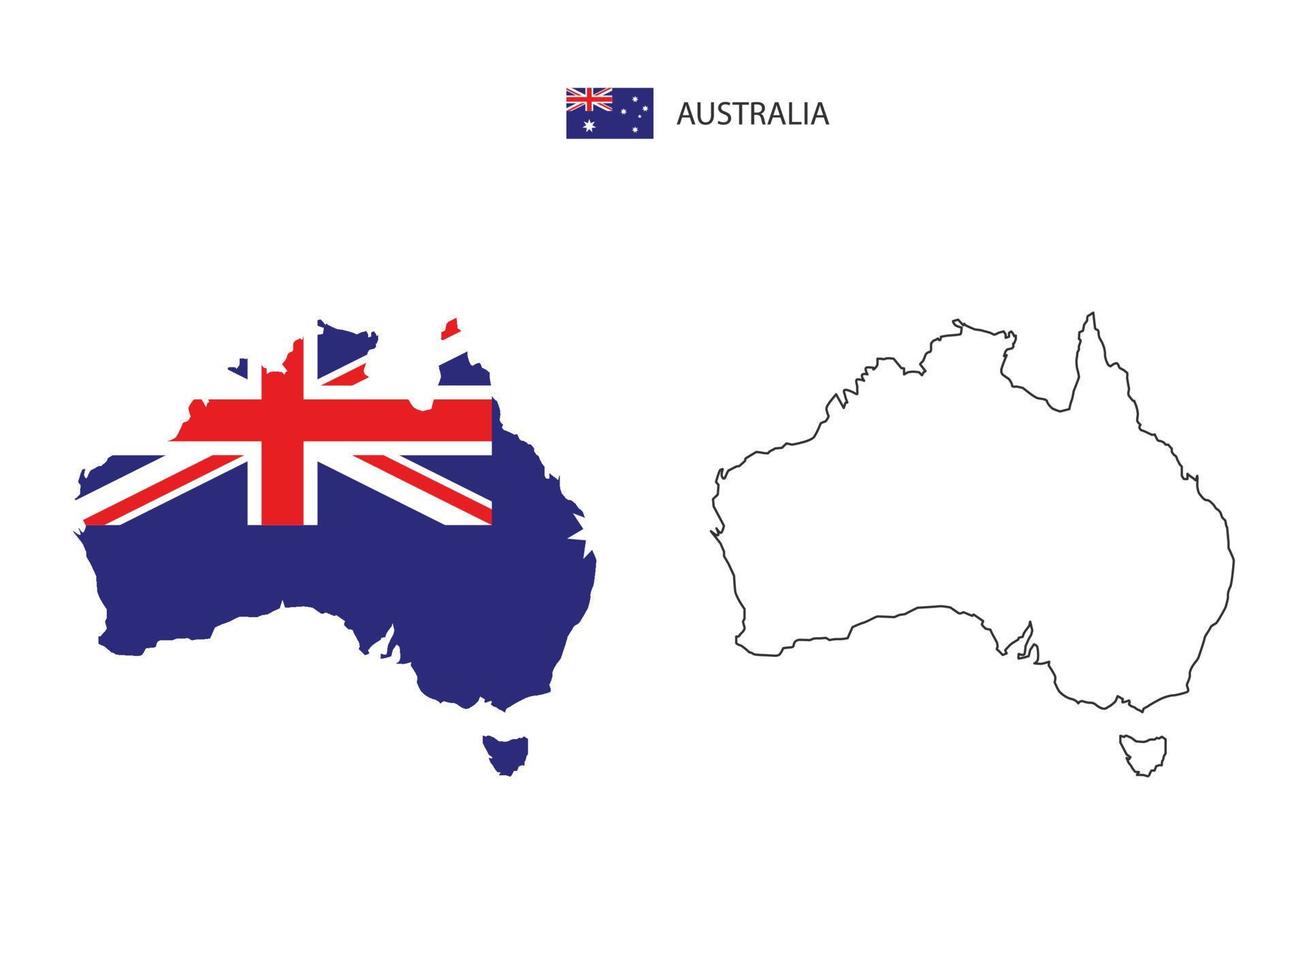 vetor da cidade do mapa da austrália dividido pelo estilo de simplicidade do contorno. tem 2 versões, versão de linha fina preta e cor da versão da bandeira do país. ambos os mapas estavam no fundo branco.